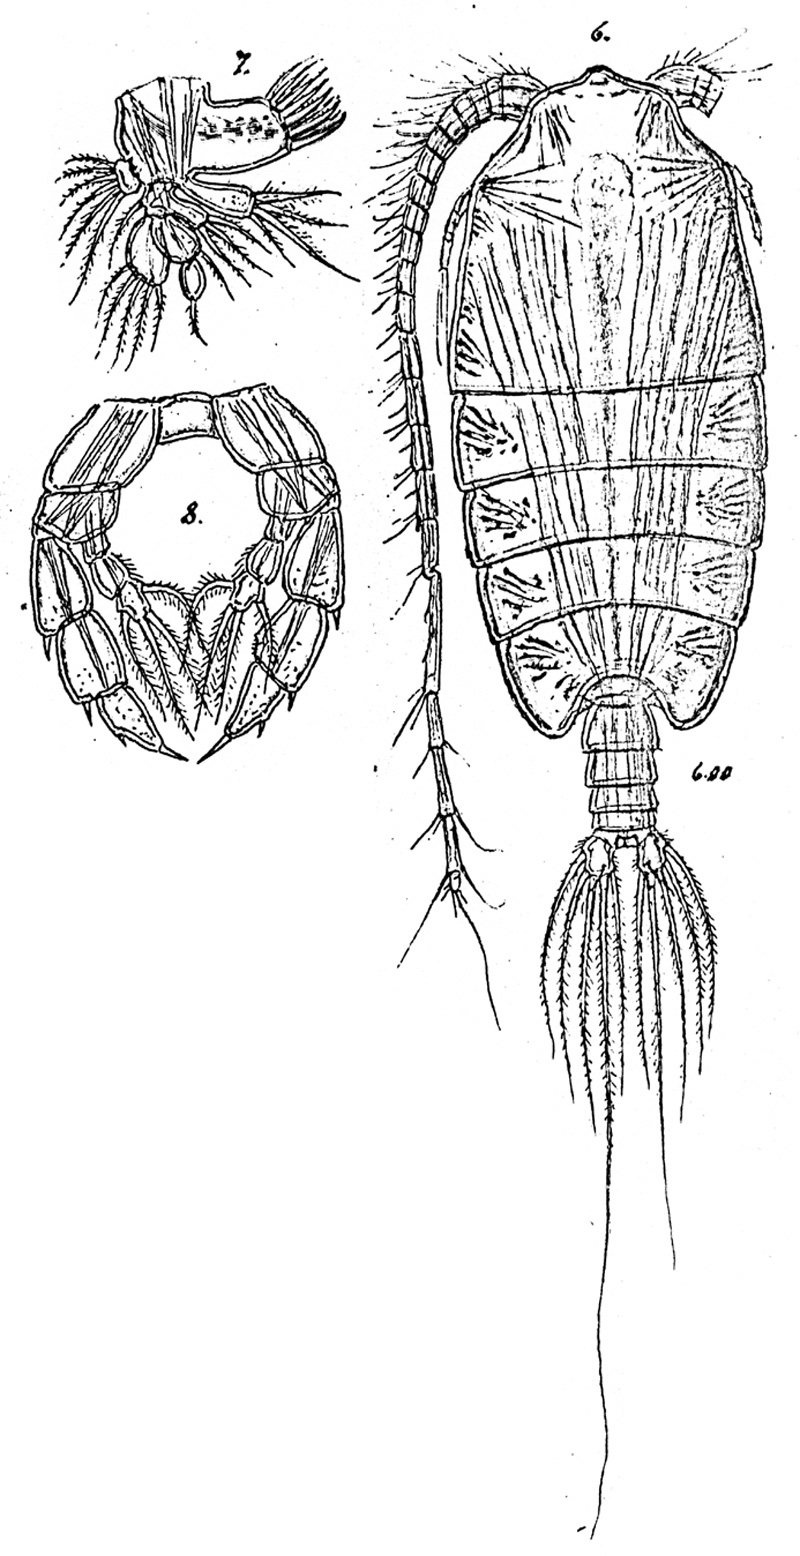 Species Pontoptilus robustus - Plate 2 of morphological figures